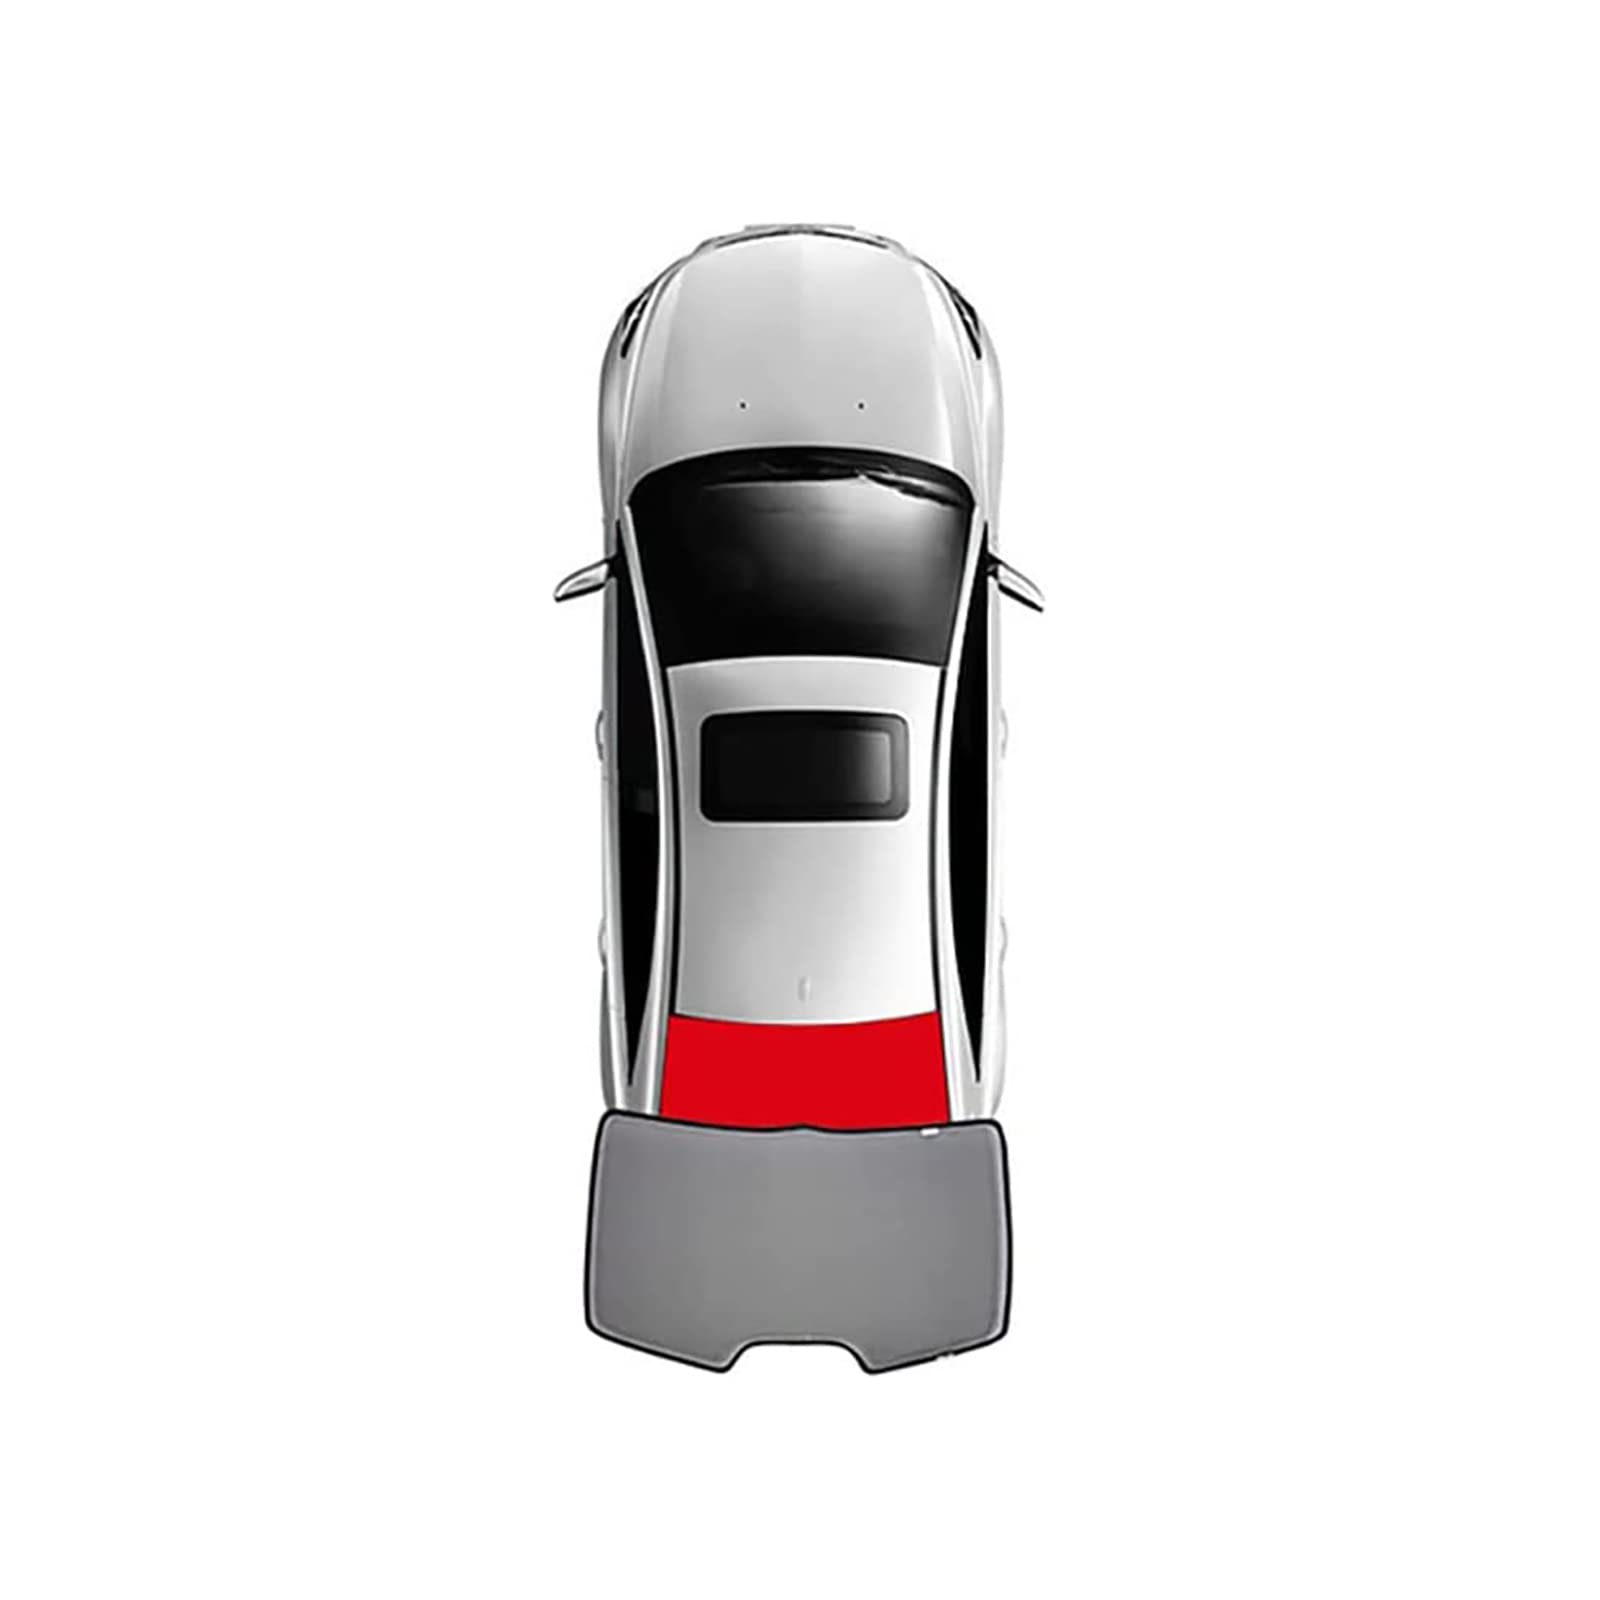 Auto Seitenfenster Sonnenschutz für BMW X5 E70 2006-2013, Vordere und Hintere Seitenfenster Atmungsaktives UV Schutz Privacy Protection Sonnenschutz Accessories,1pcs Rear von MSTMAZZ